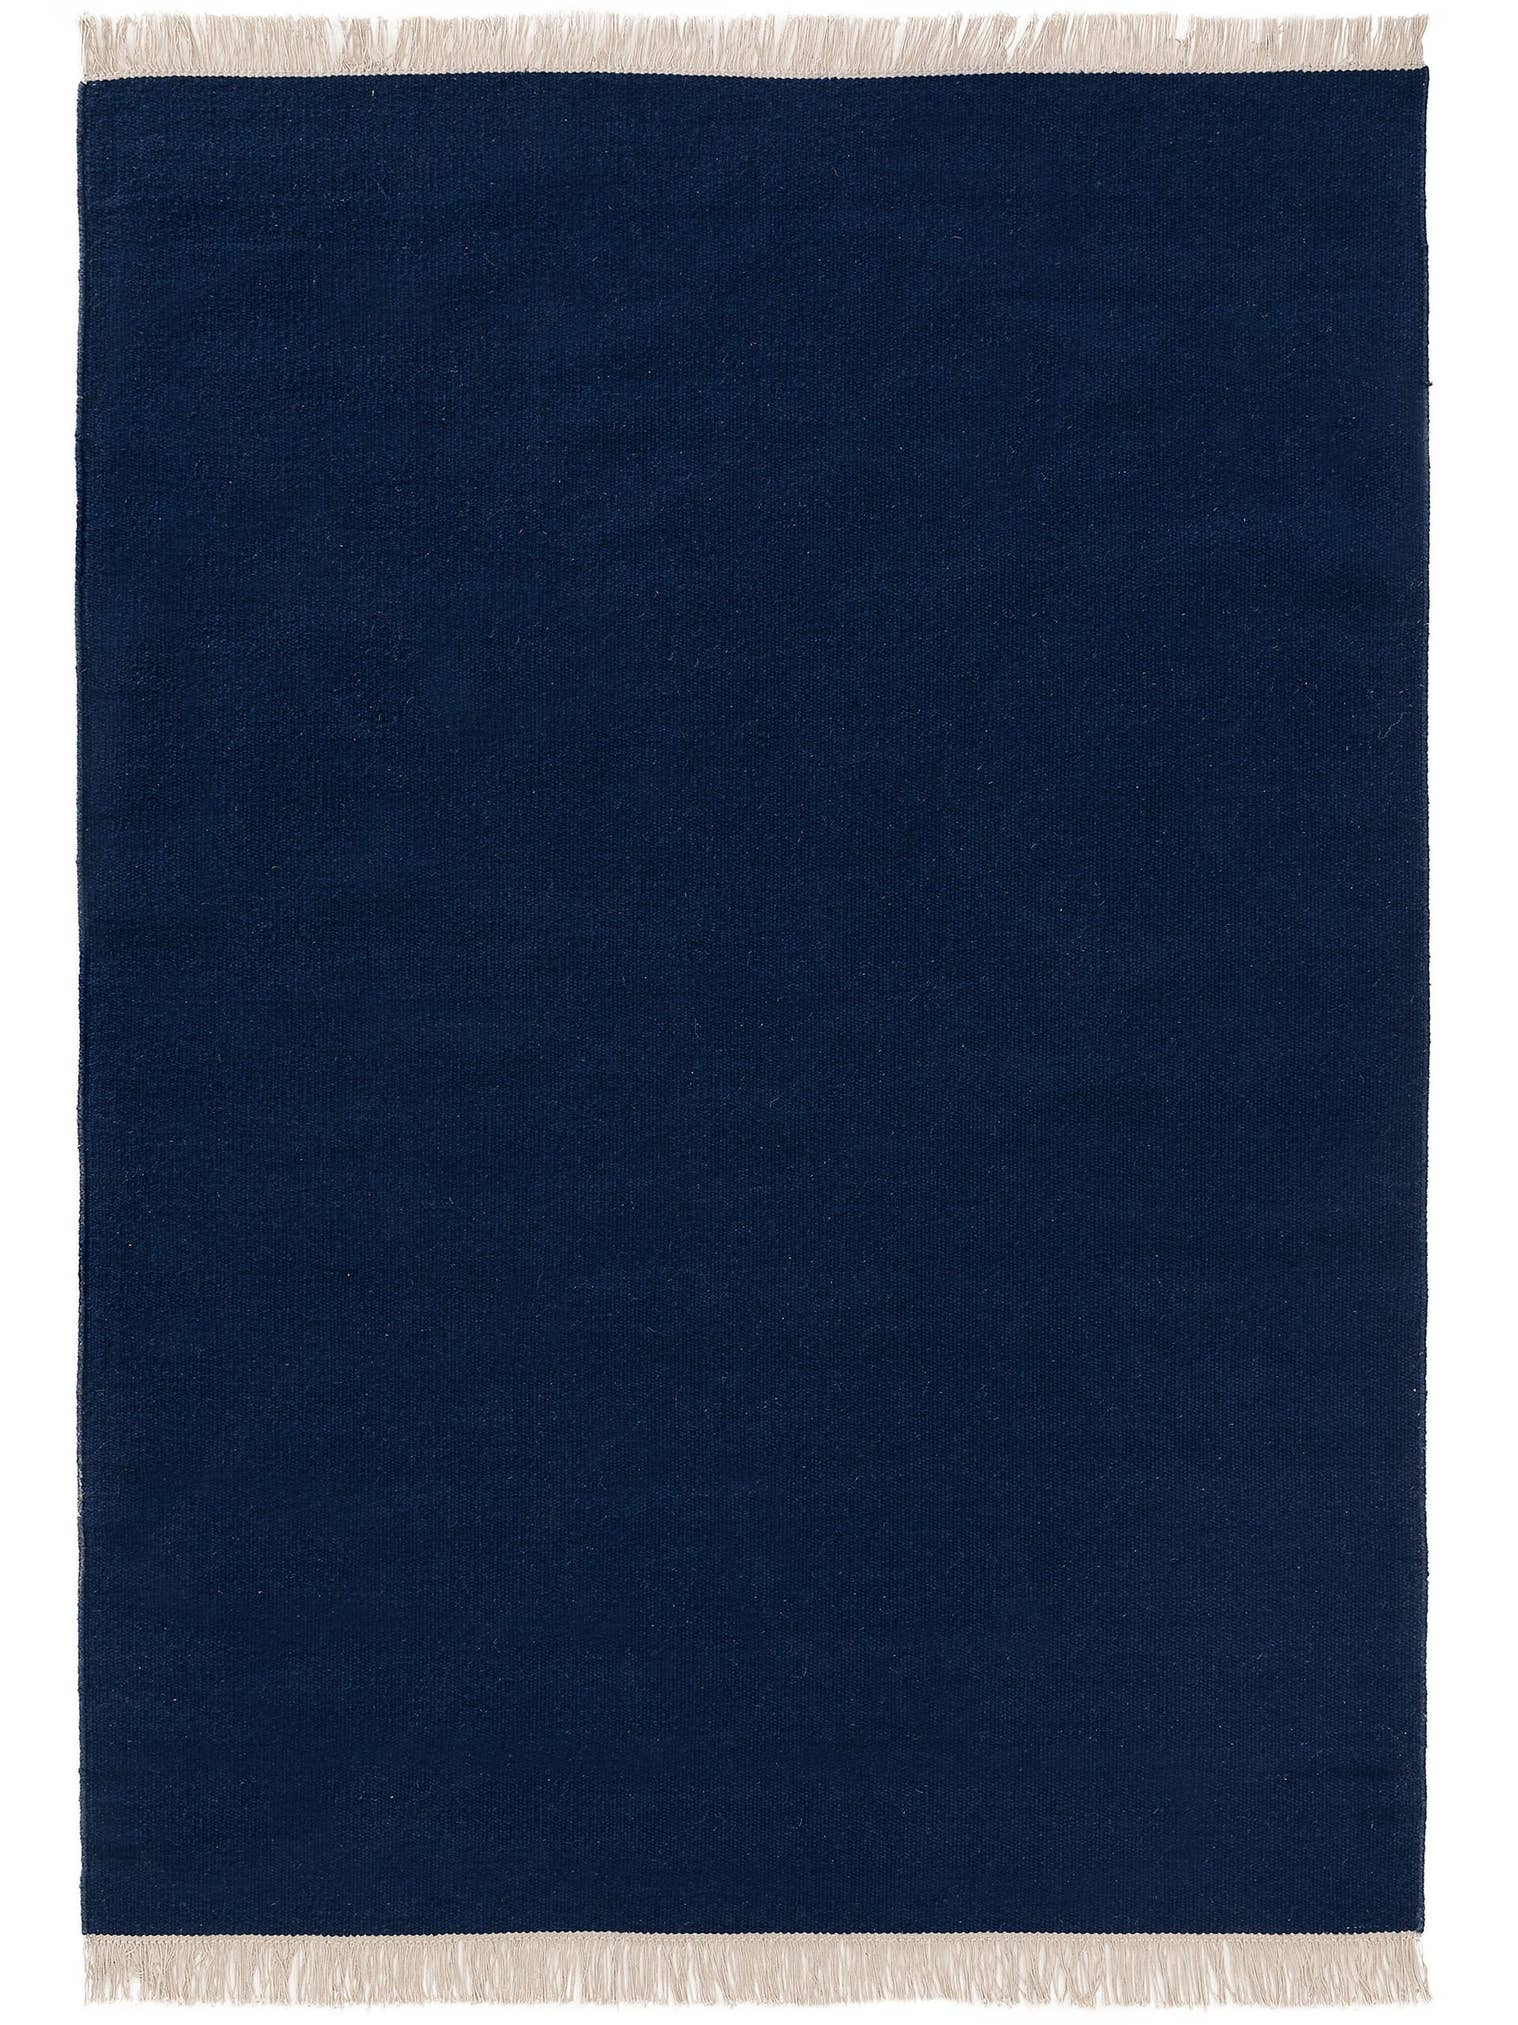 Teppich aus 80% Wolle, 20% Baumwolle in Blau mit bis 5 mm hohem Flor von benuta Pop